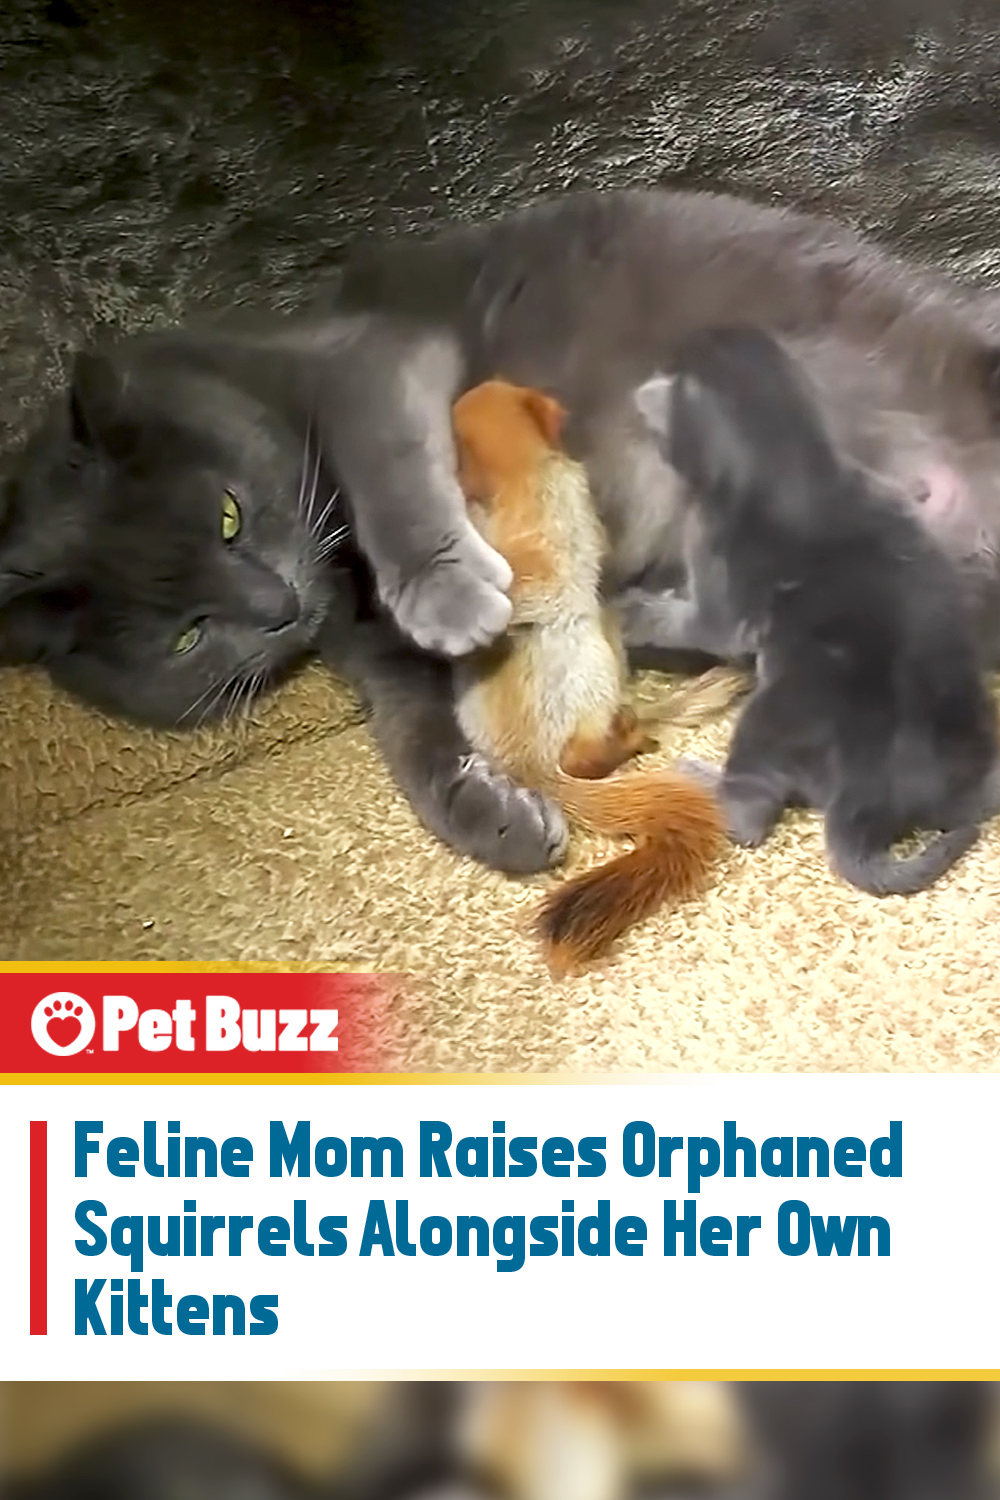 Feline Mom Raises Orphaned Squirrels Alongside Her Own Kittens